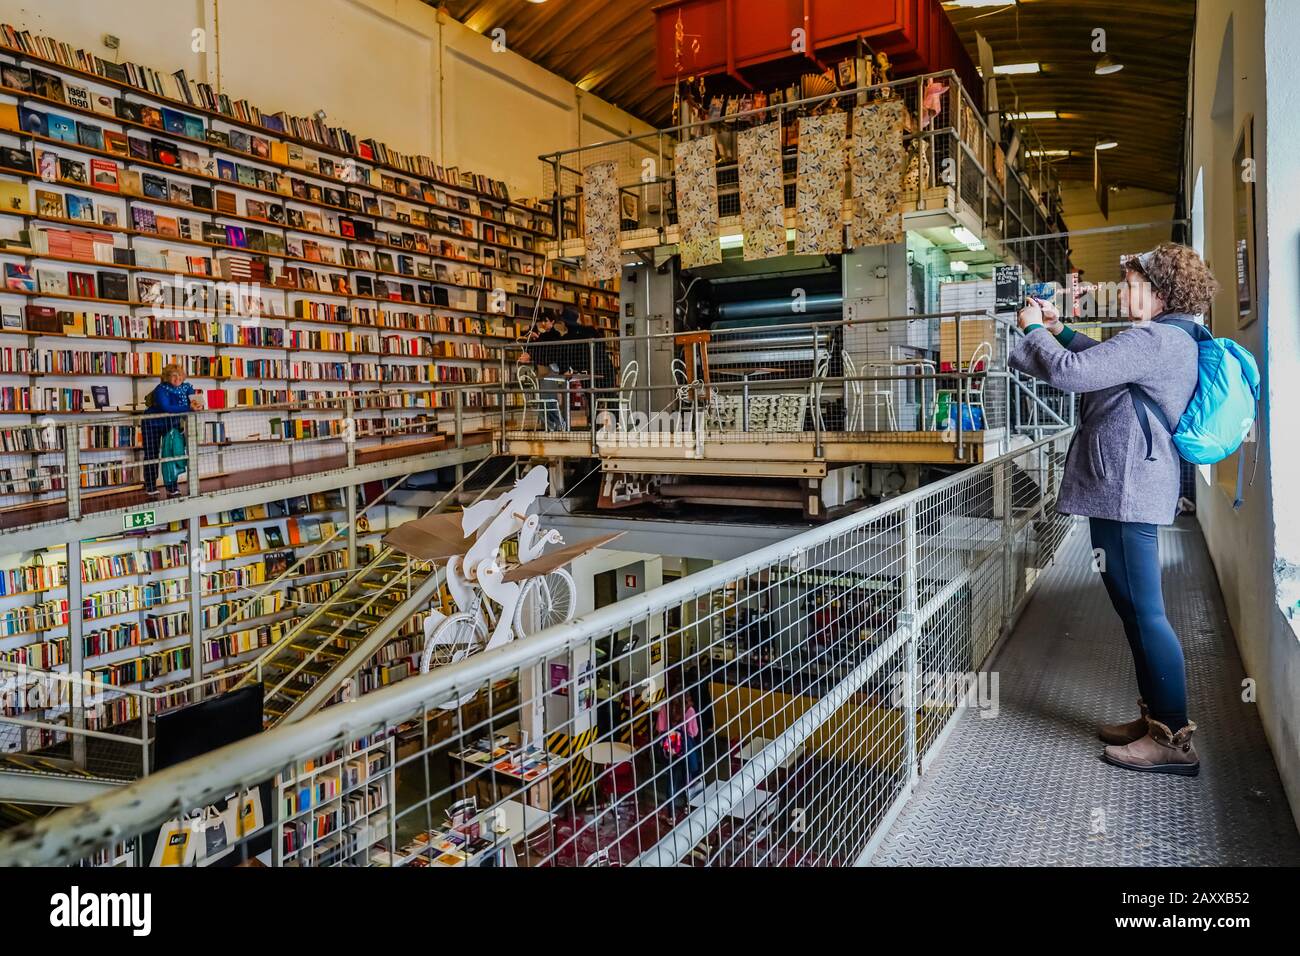 Ler Devagar è un ex laboratorio di stampa di giornali, ora convertito in una libreria in fabbrica LX a Lisbona Portogallo. Il suo motto significa leggere lentamente. Foto Stock